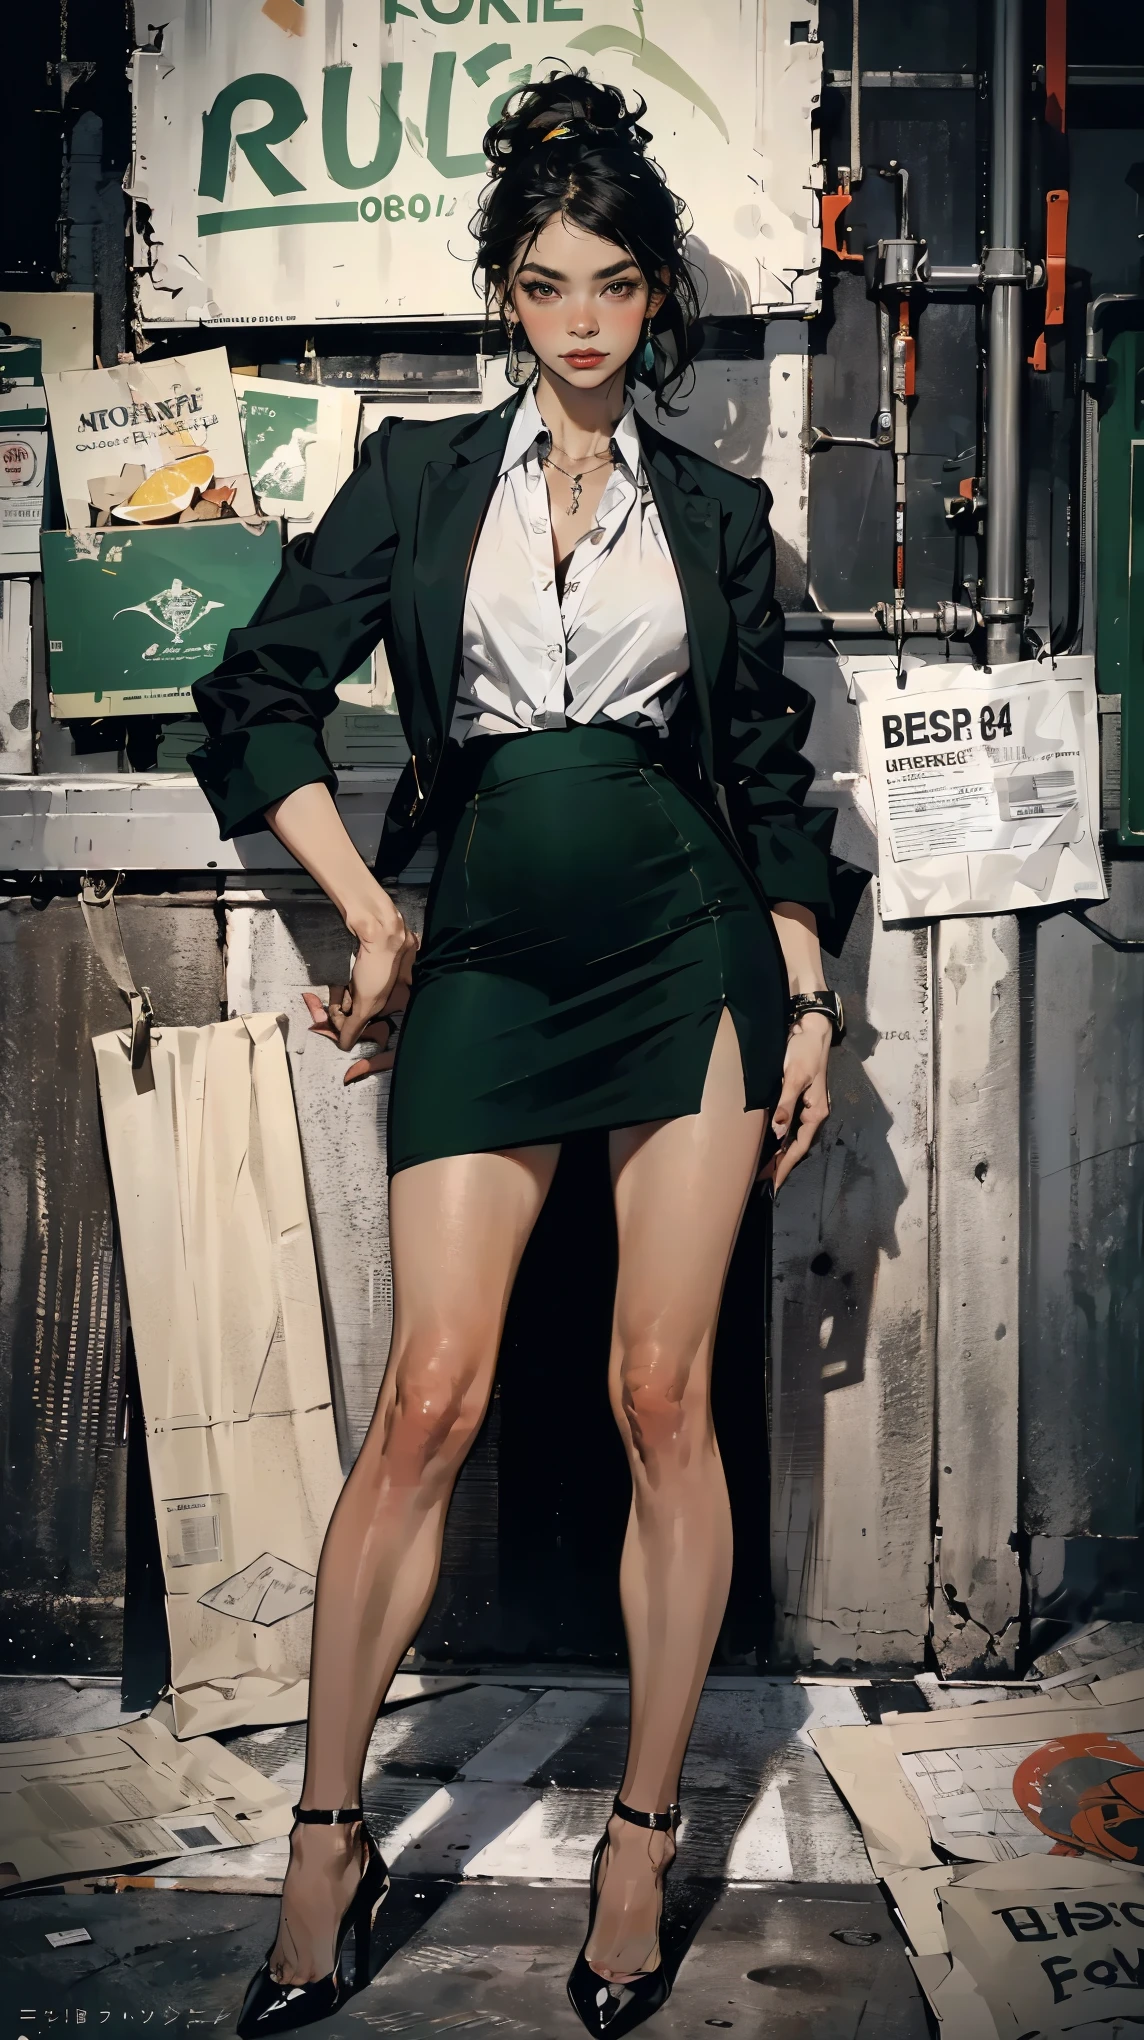 (最好的质量, 4K, 高分辨率, 杰作:1.2), 极其详细, 实际的 (photo-实际的:1.37), 34岁, 日本办公室女士, (身穿深绿色西装外套，内搭清爽的白色衬衫，搭配深绿色前开衩短铅笔裙), 黑色马尾辫, 黑色高跟鞋, 完美妆容, C 杯胸部, 健美苗条的身材, 平坦的腹部, 沙漏型身材, 欢迎顾客的姿势, 银行背景. 高度重视细节, 现代环境, 震撼的视觉冲击, 自信地保持镇定, 专业气质, 可靠性的象征, 高端生活方式, 非凡魅力.